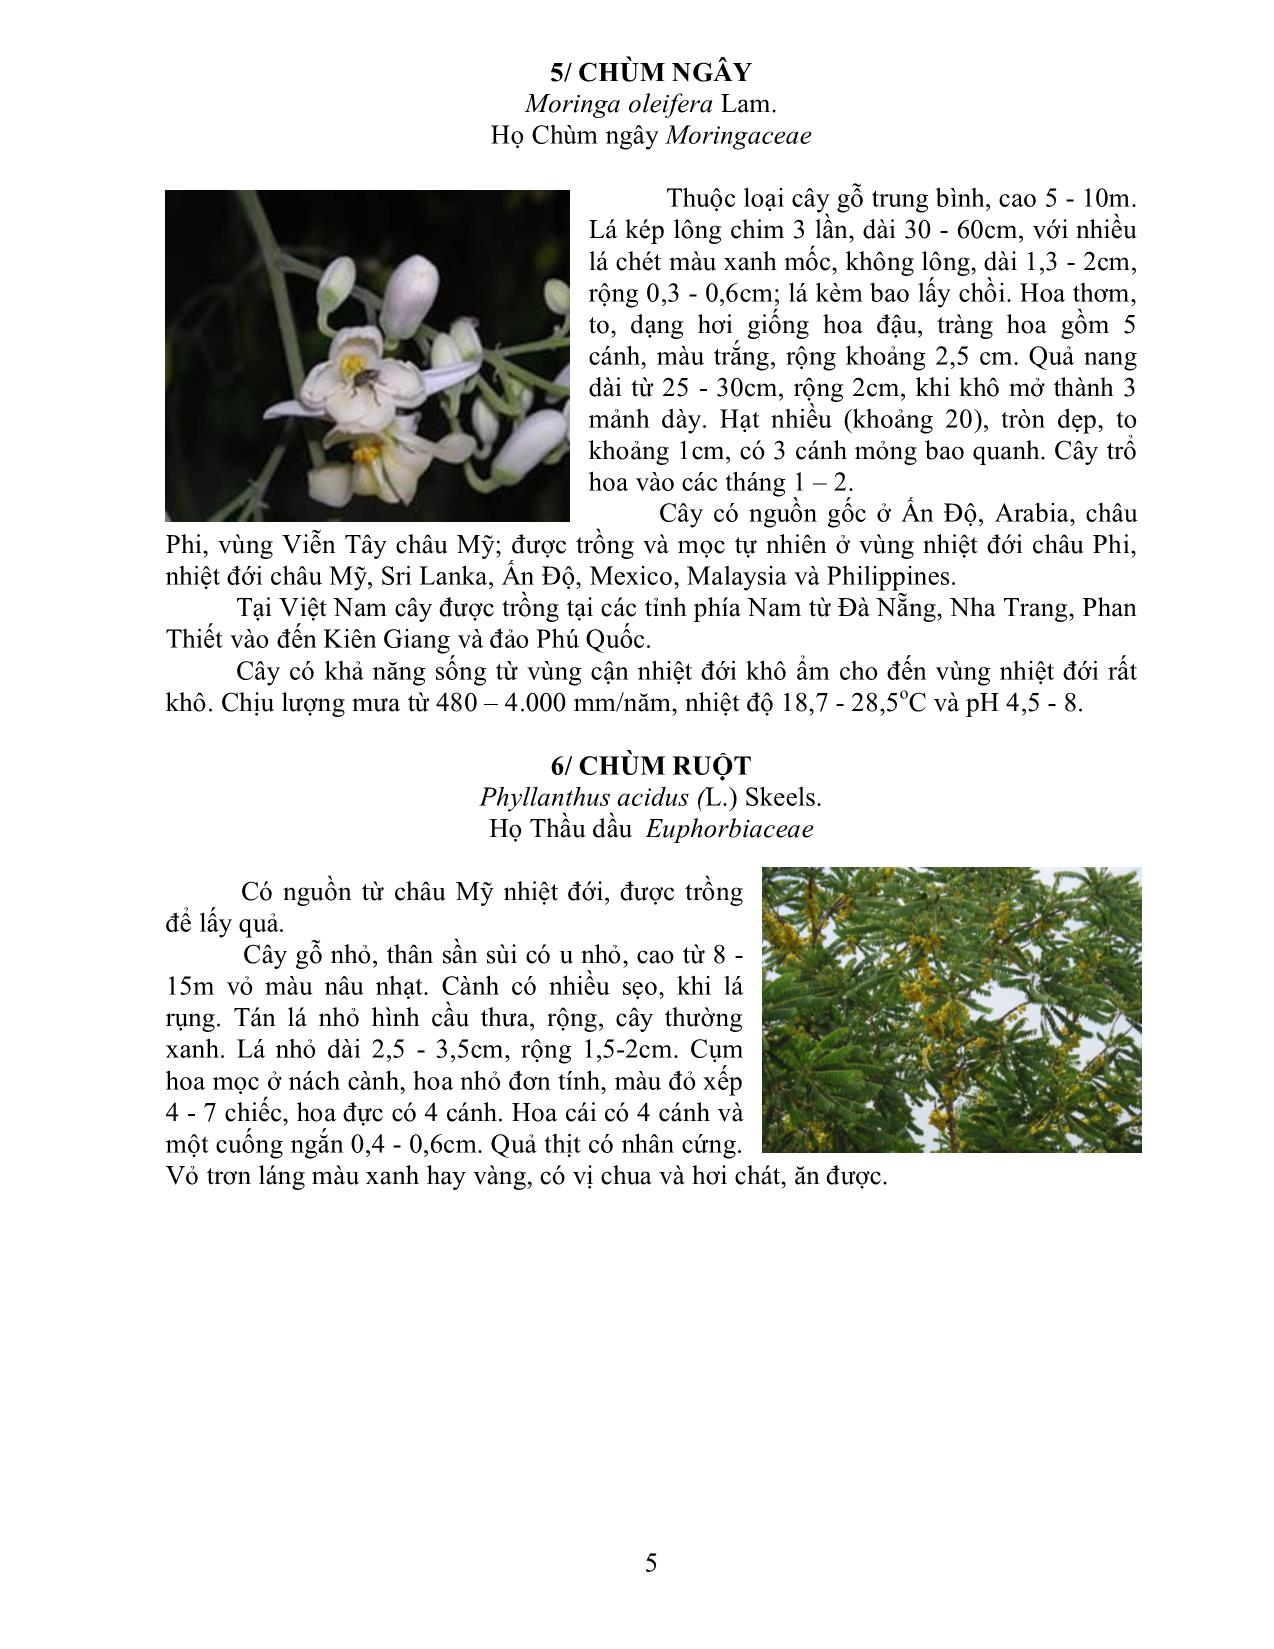 Cẩm nang cây xanh, hoa kiểng trồng trong khuôn viên trang 5